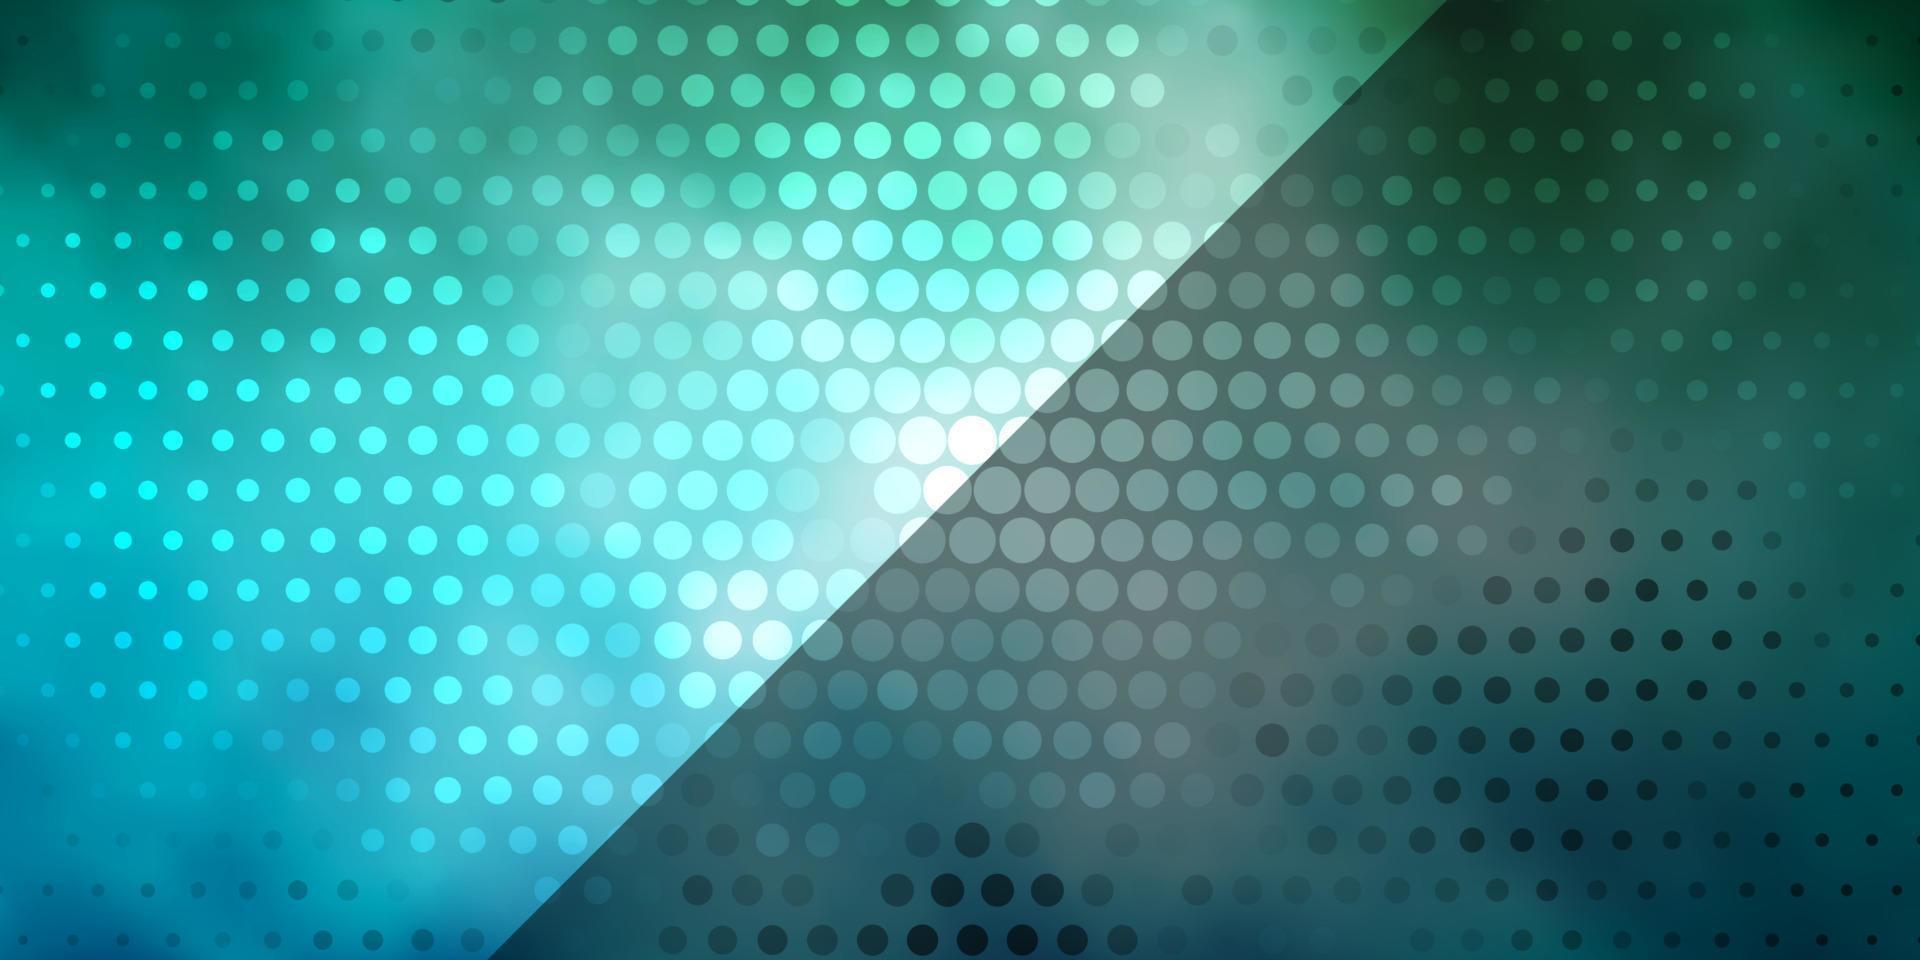 ljusblå, grön vektorbakgrund med cirklar. vektor